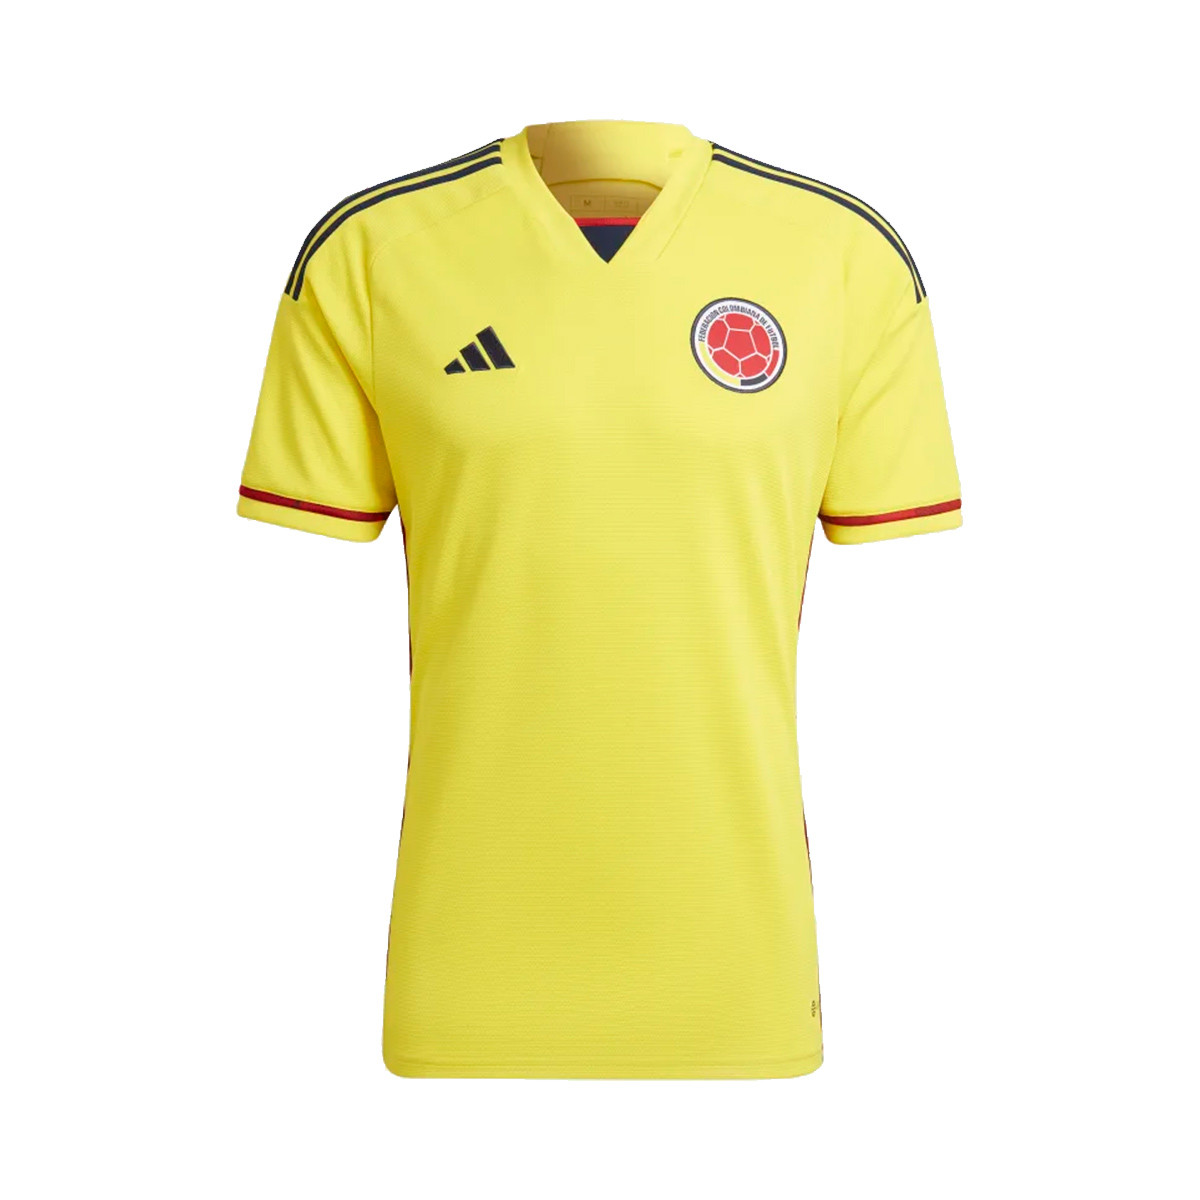 Expresamente huella dactilar falta de aliento Camiseta adidas Colombia Primera Equipación Mundial Qatar 2022 Bright  Yellow - Fútbol Emotion